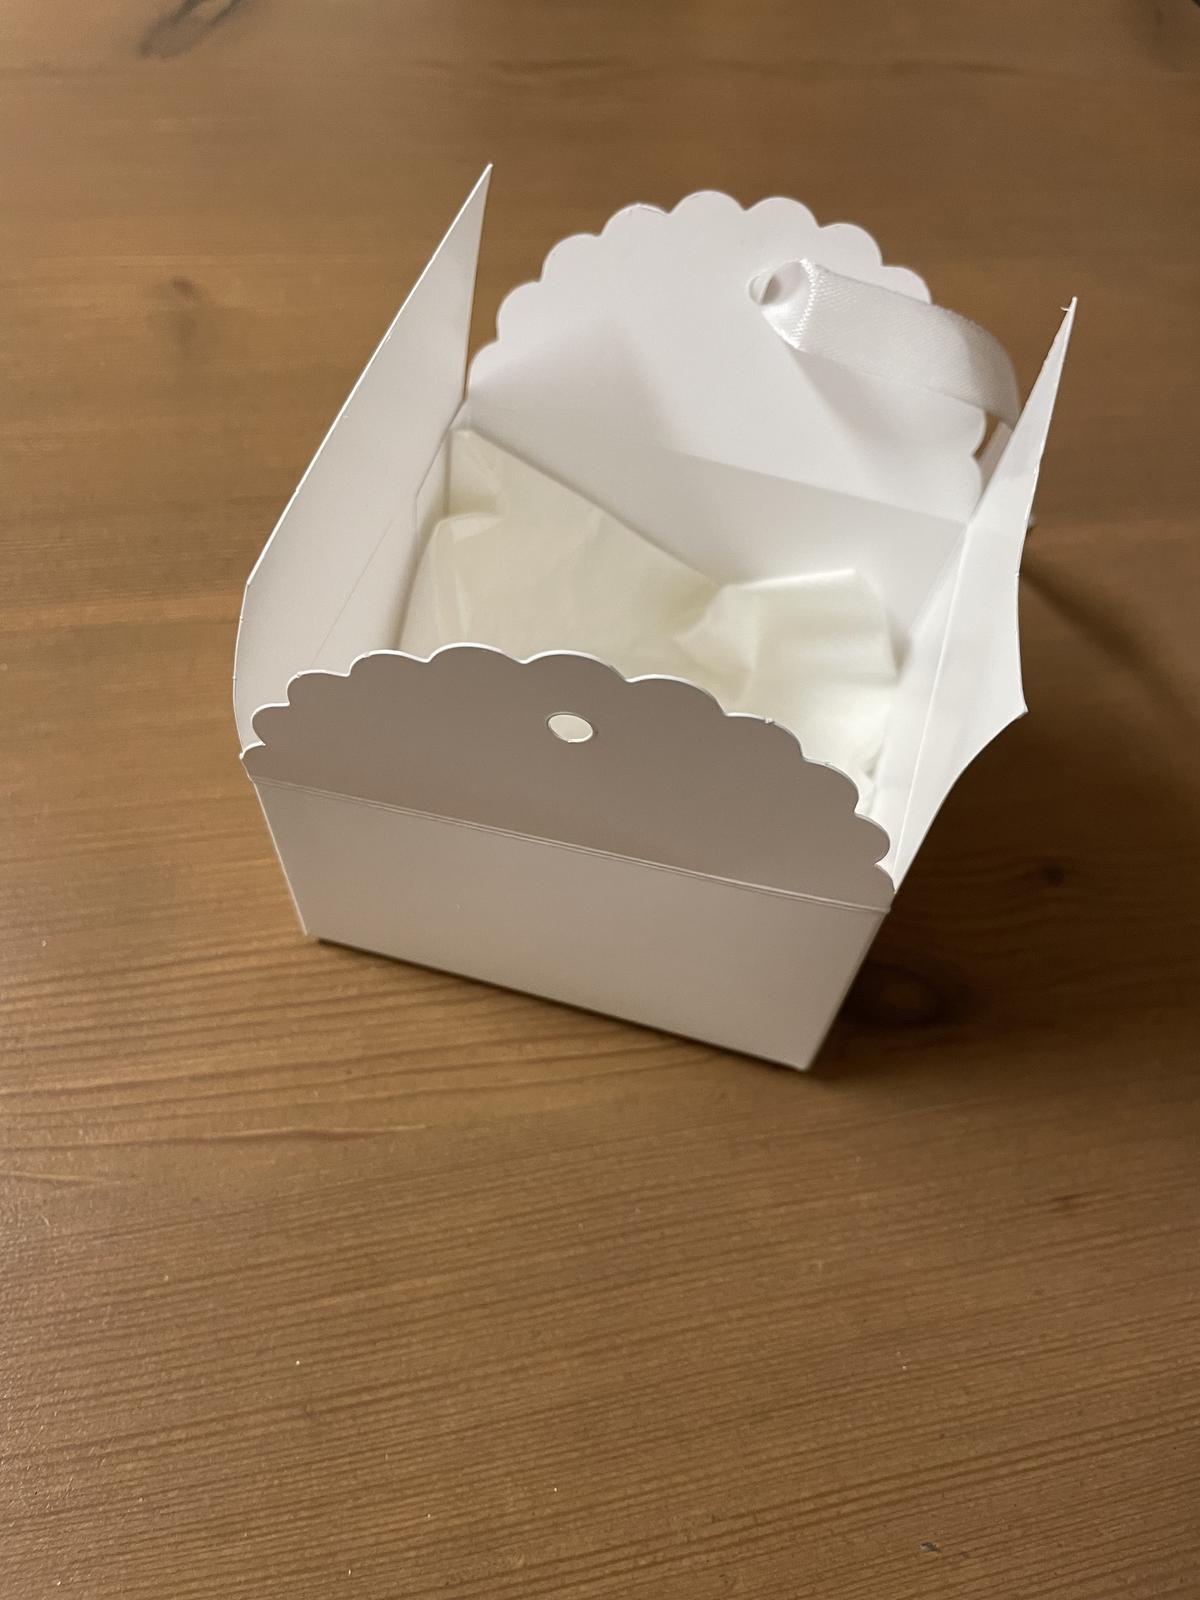 Krabičky na koláčky se stuhou - Obrázek č. 1